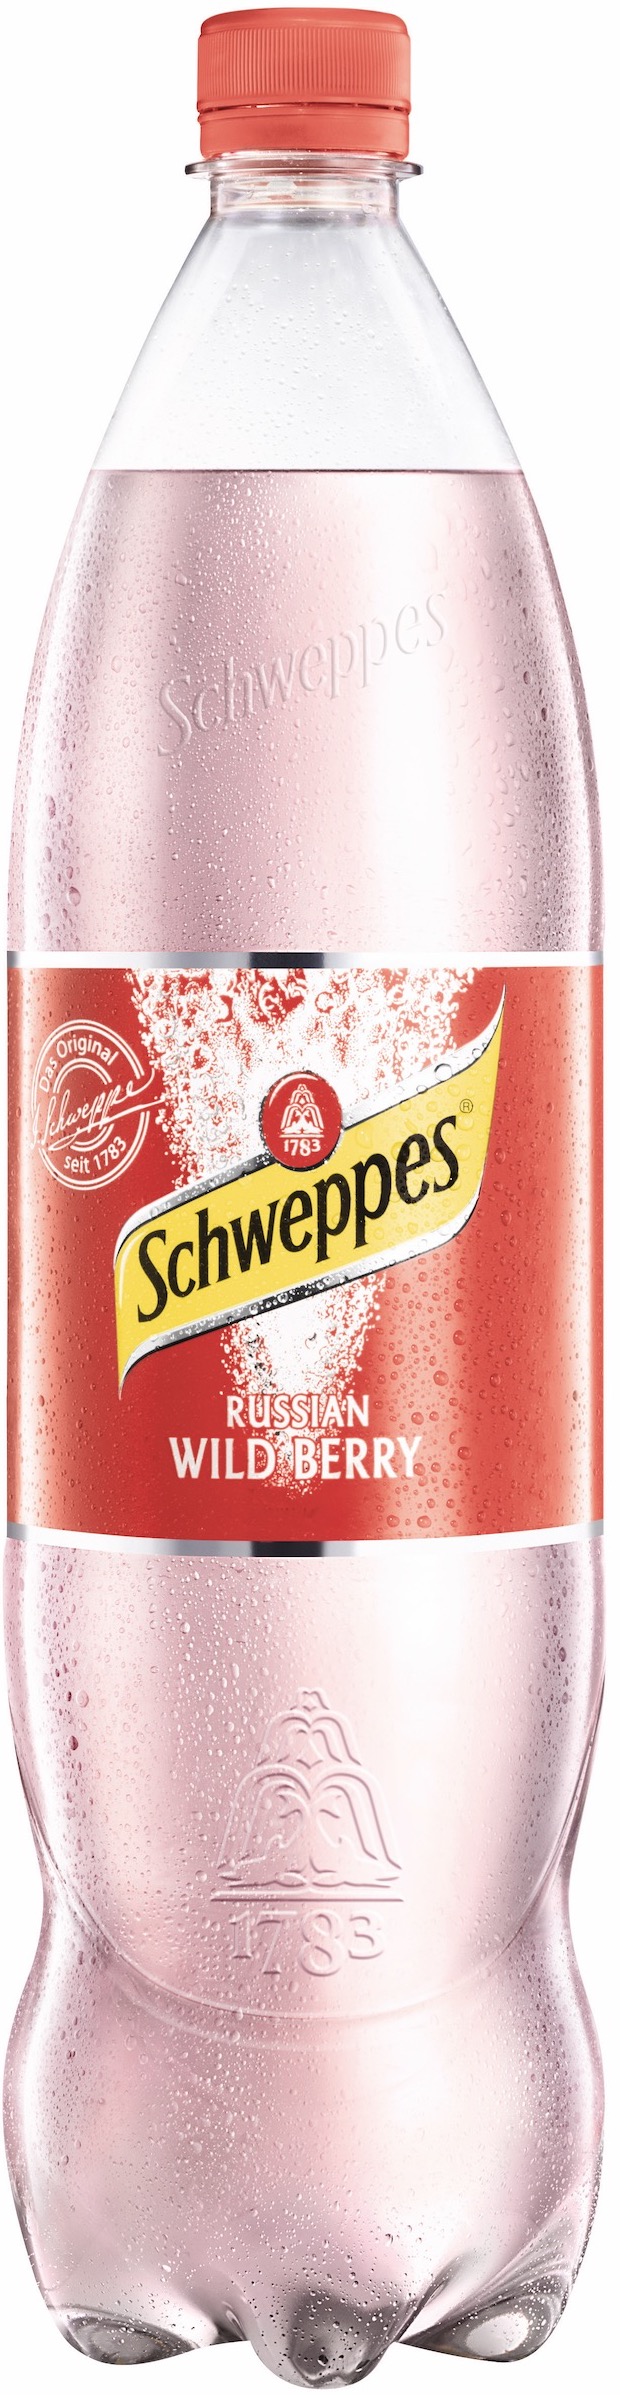 Schweppes Russian Wild Berry 1,25L EINWEG